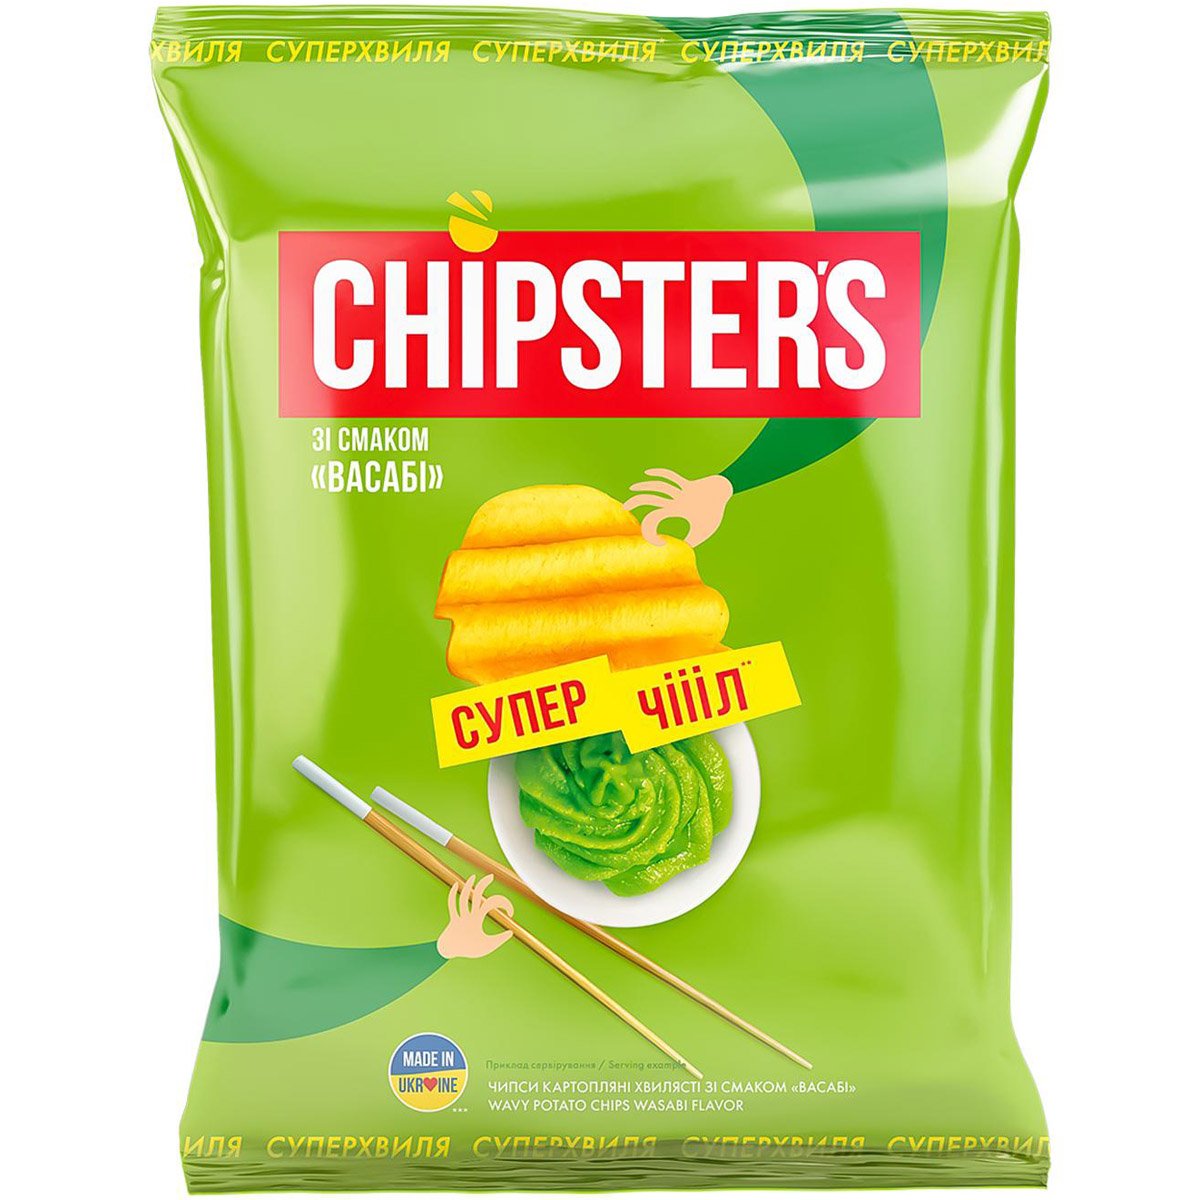 Чипси Chipster's хвилясті зі смаком васабі 110 г (877339) - фото 1